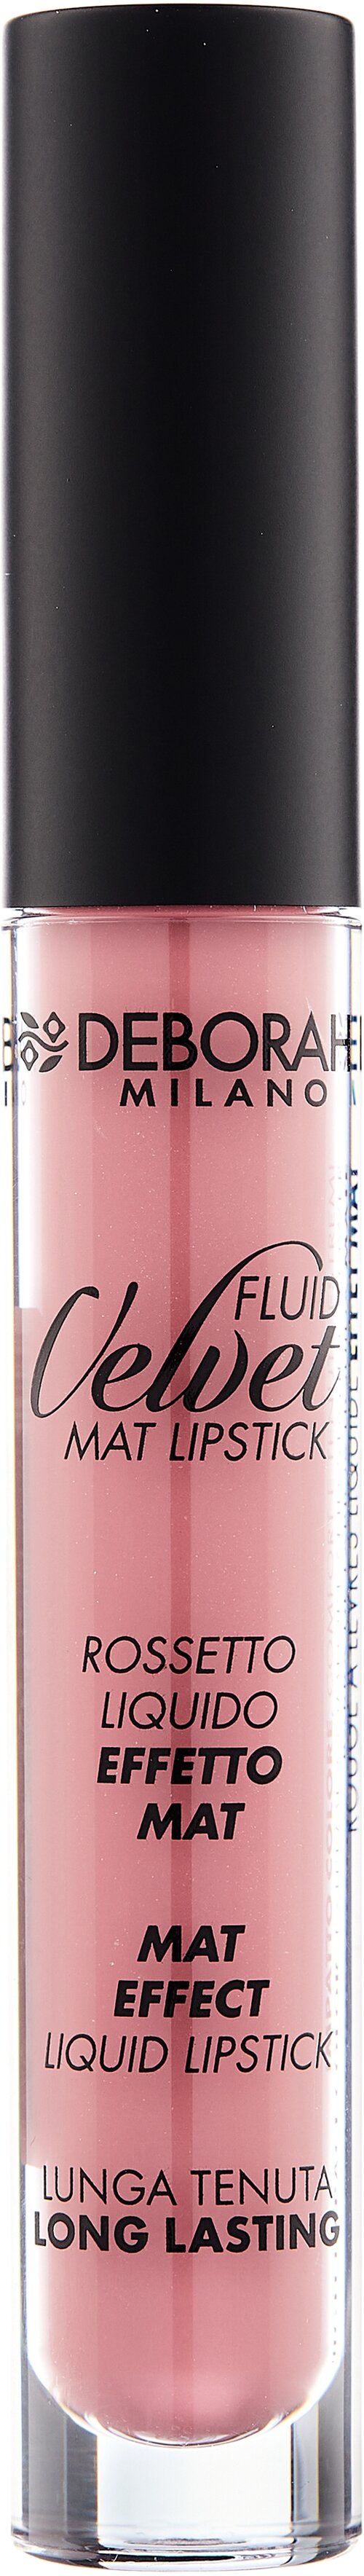 DEBORAH жидкая помада для губ матовая Fluid Velvet Mat Lipstick, оттенок 02 romantic pink